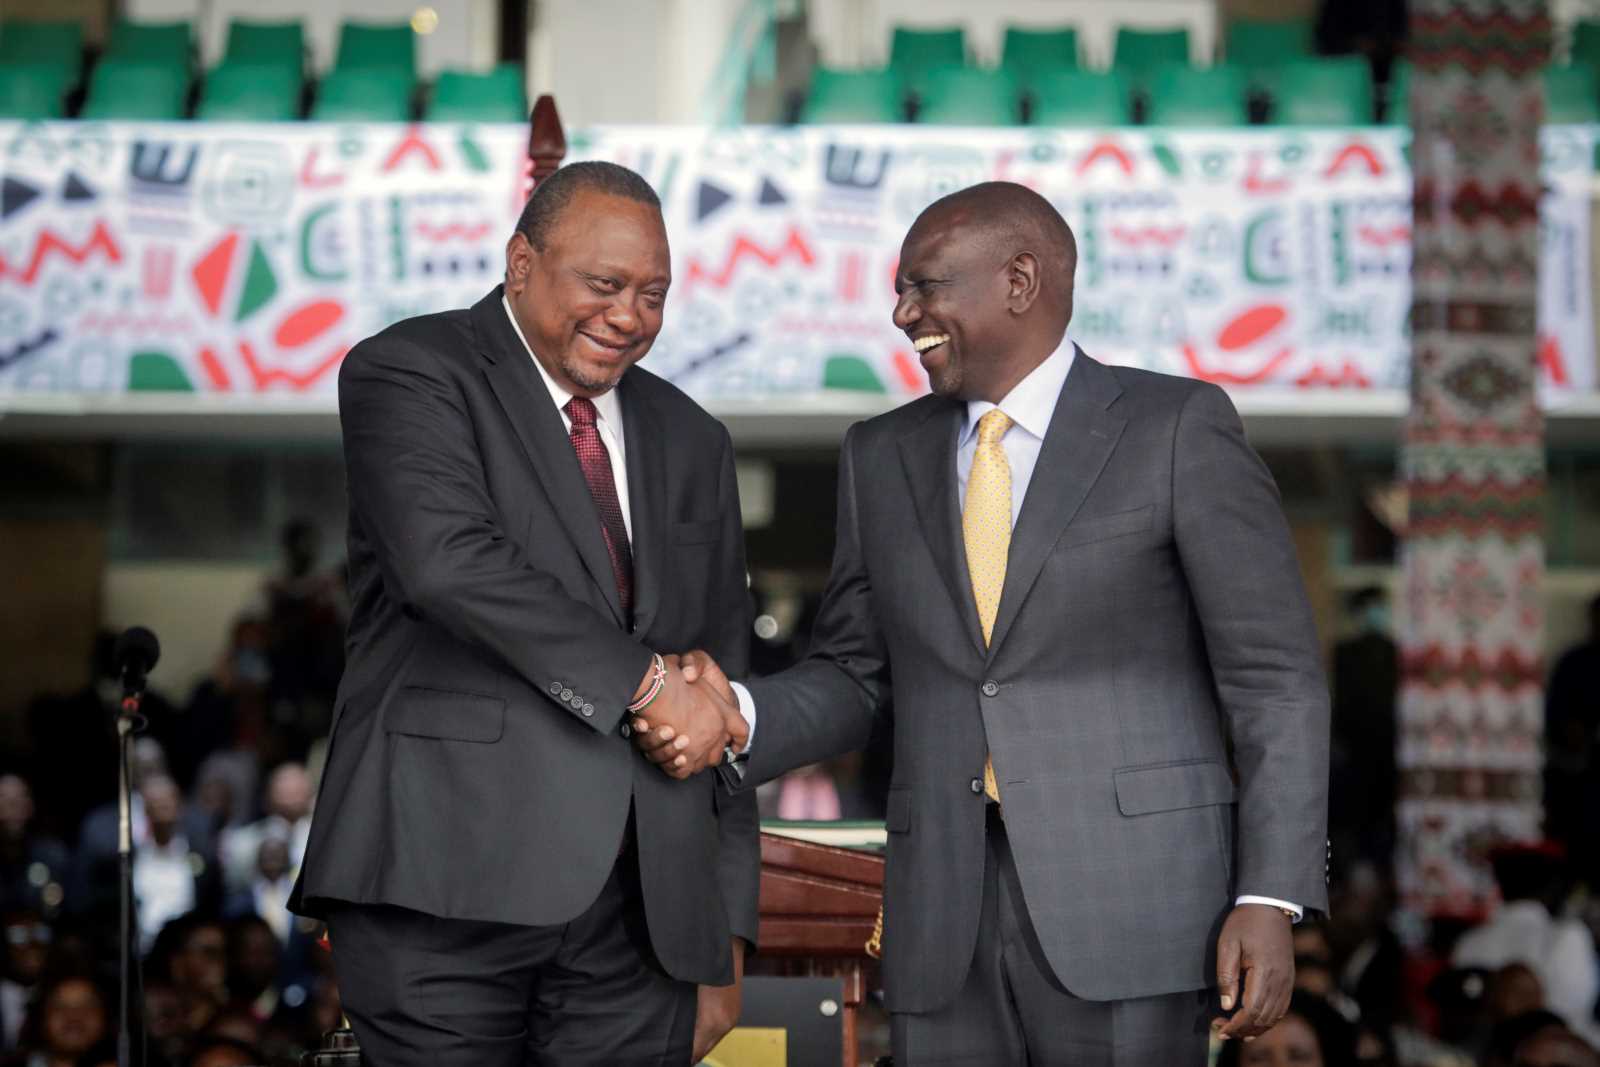 Lächeln zur Amtseinführung: Präsident Ruto (rechts) mit seinem Vorgänger und Ex-Chef Kenyatta am 13. September.